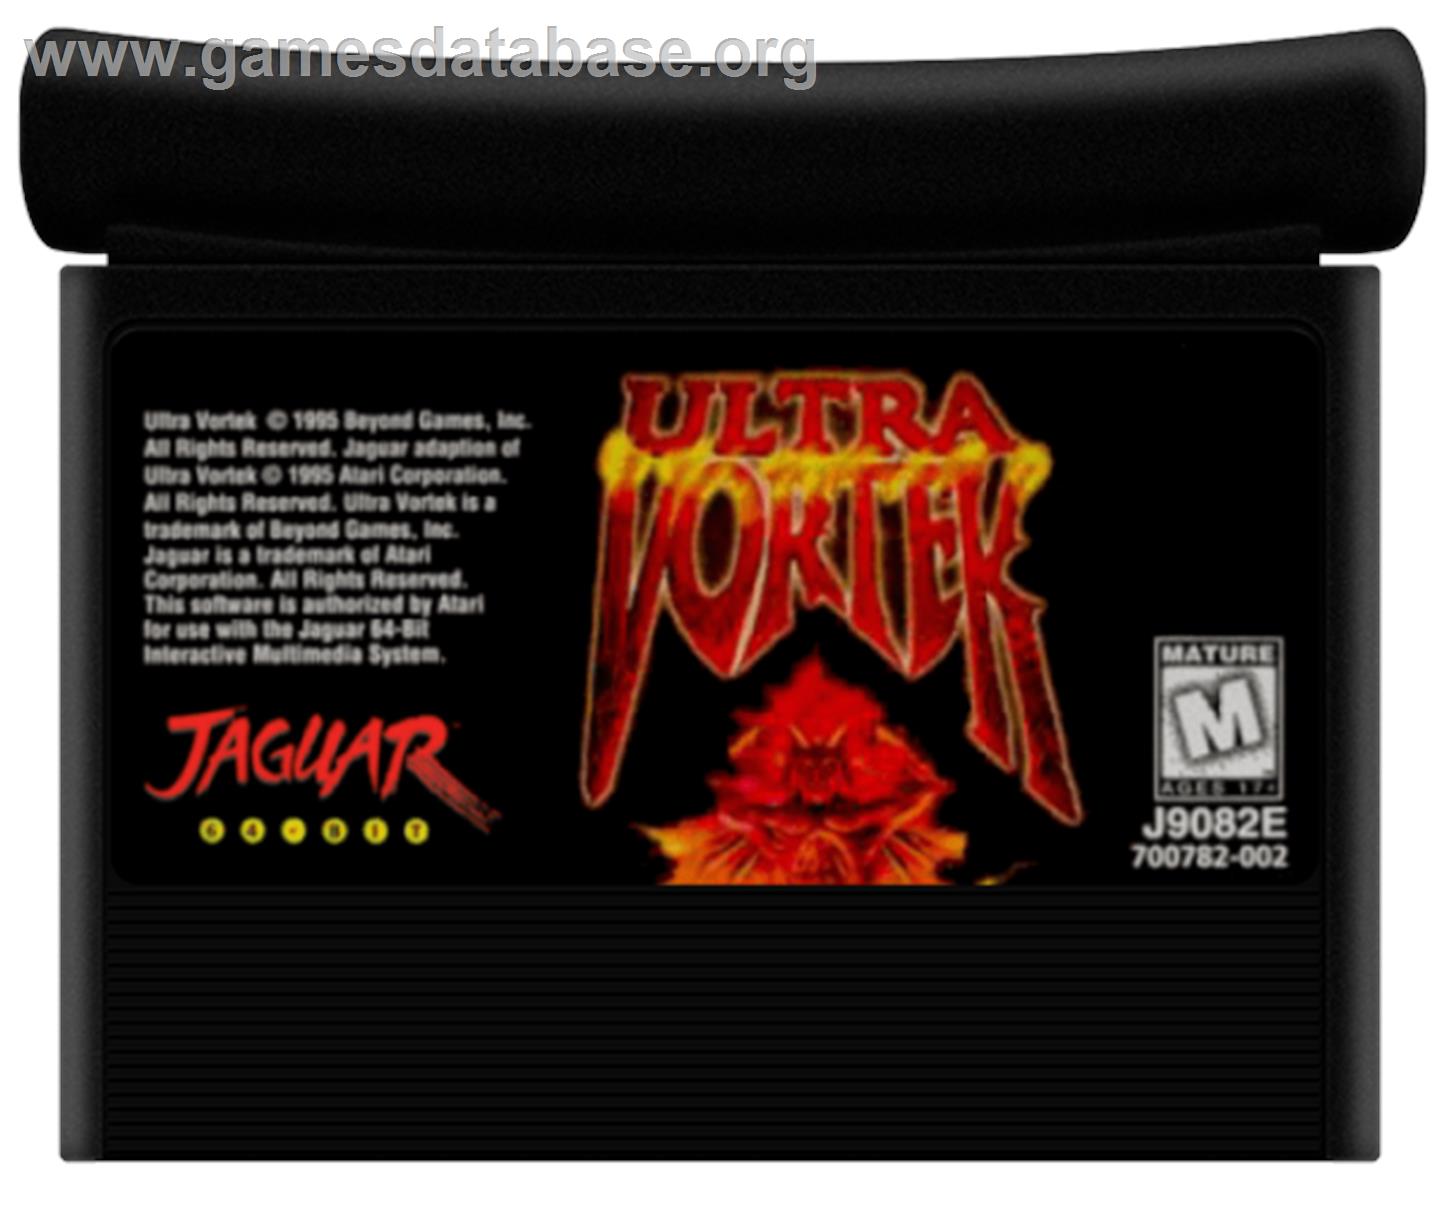 Ultra Vortek - Atari Jaguar - Artwork - Cartridge